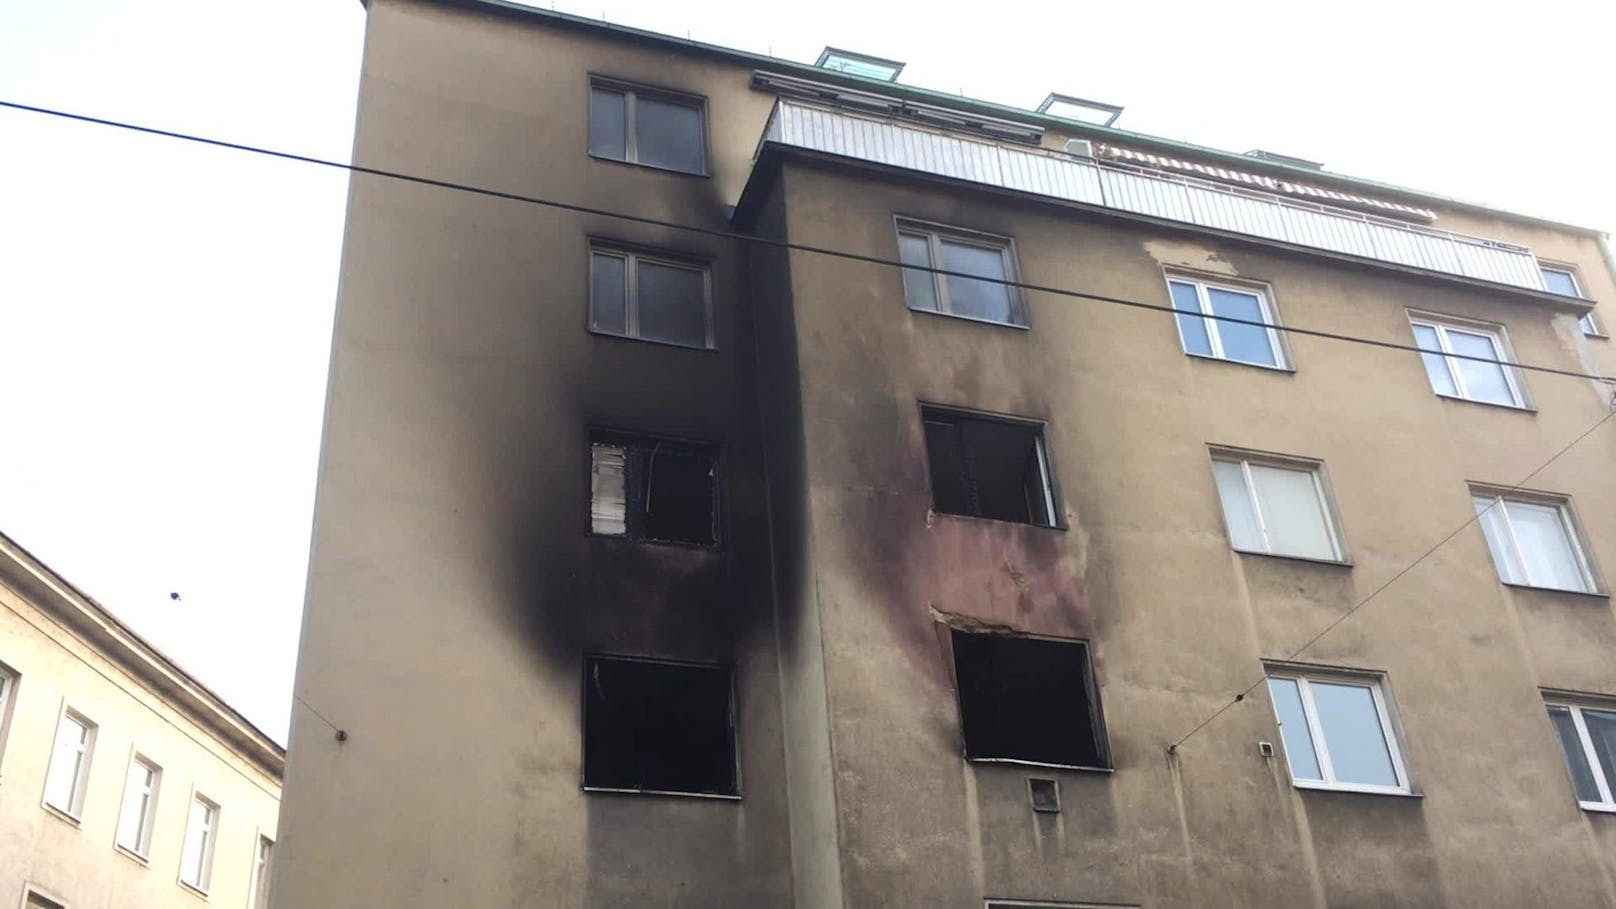 Samstagmittag brannte eine Wohnung in Wien-Meidling lichterloh. Bei dem Feuer kam eine Person ums Leben.